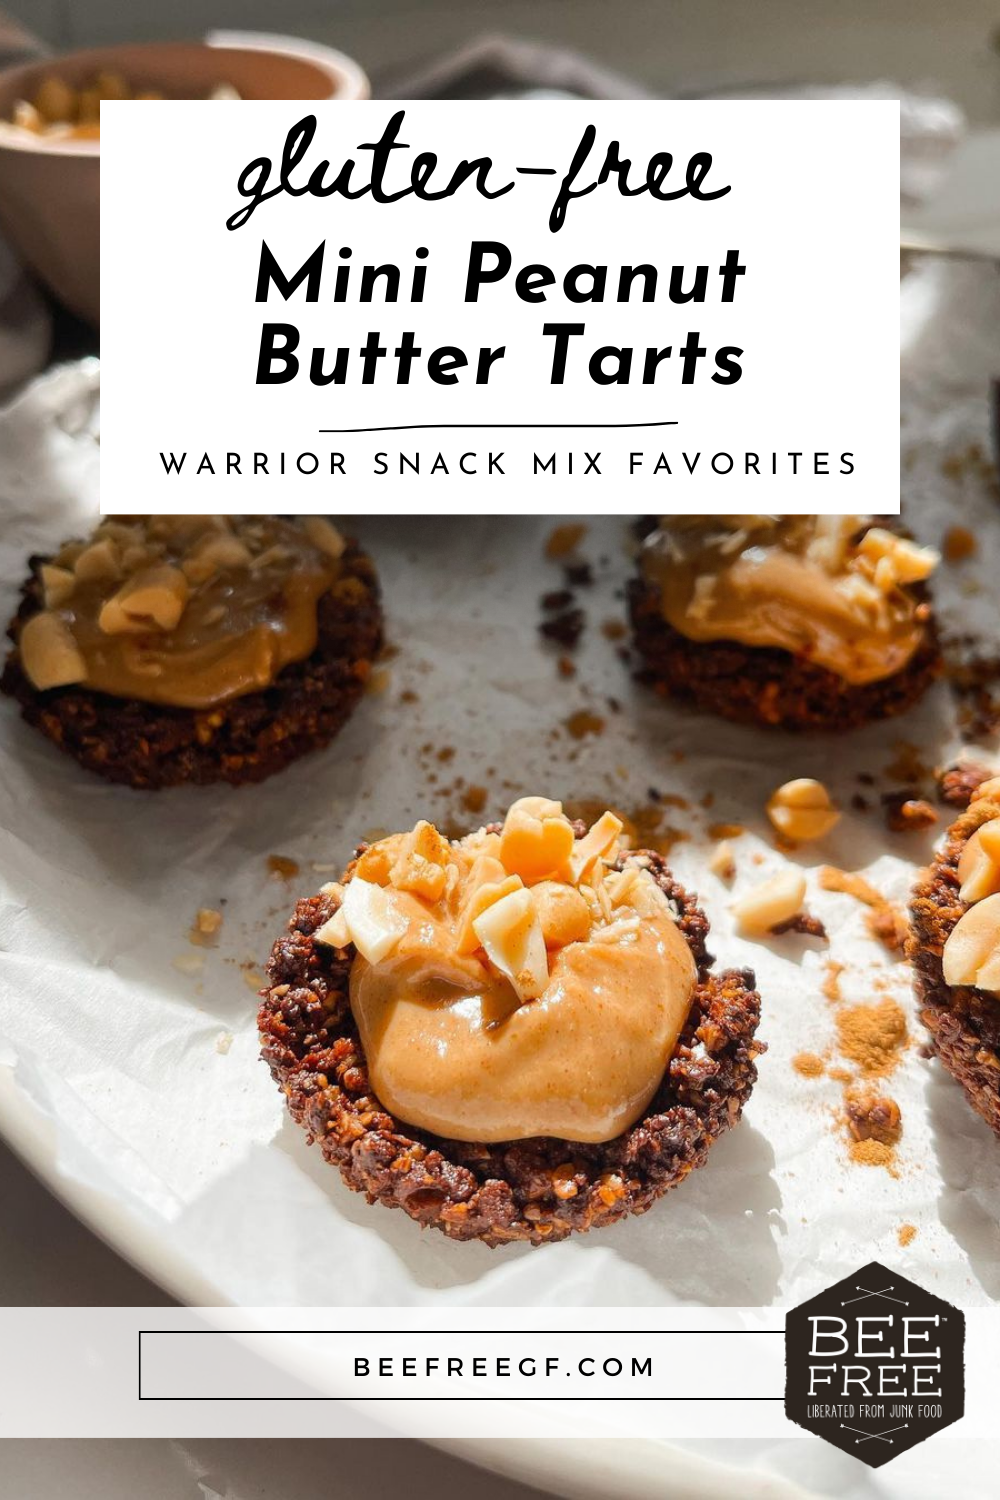 Mini Peanut Butter Tarts